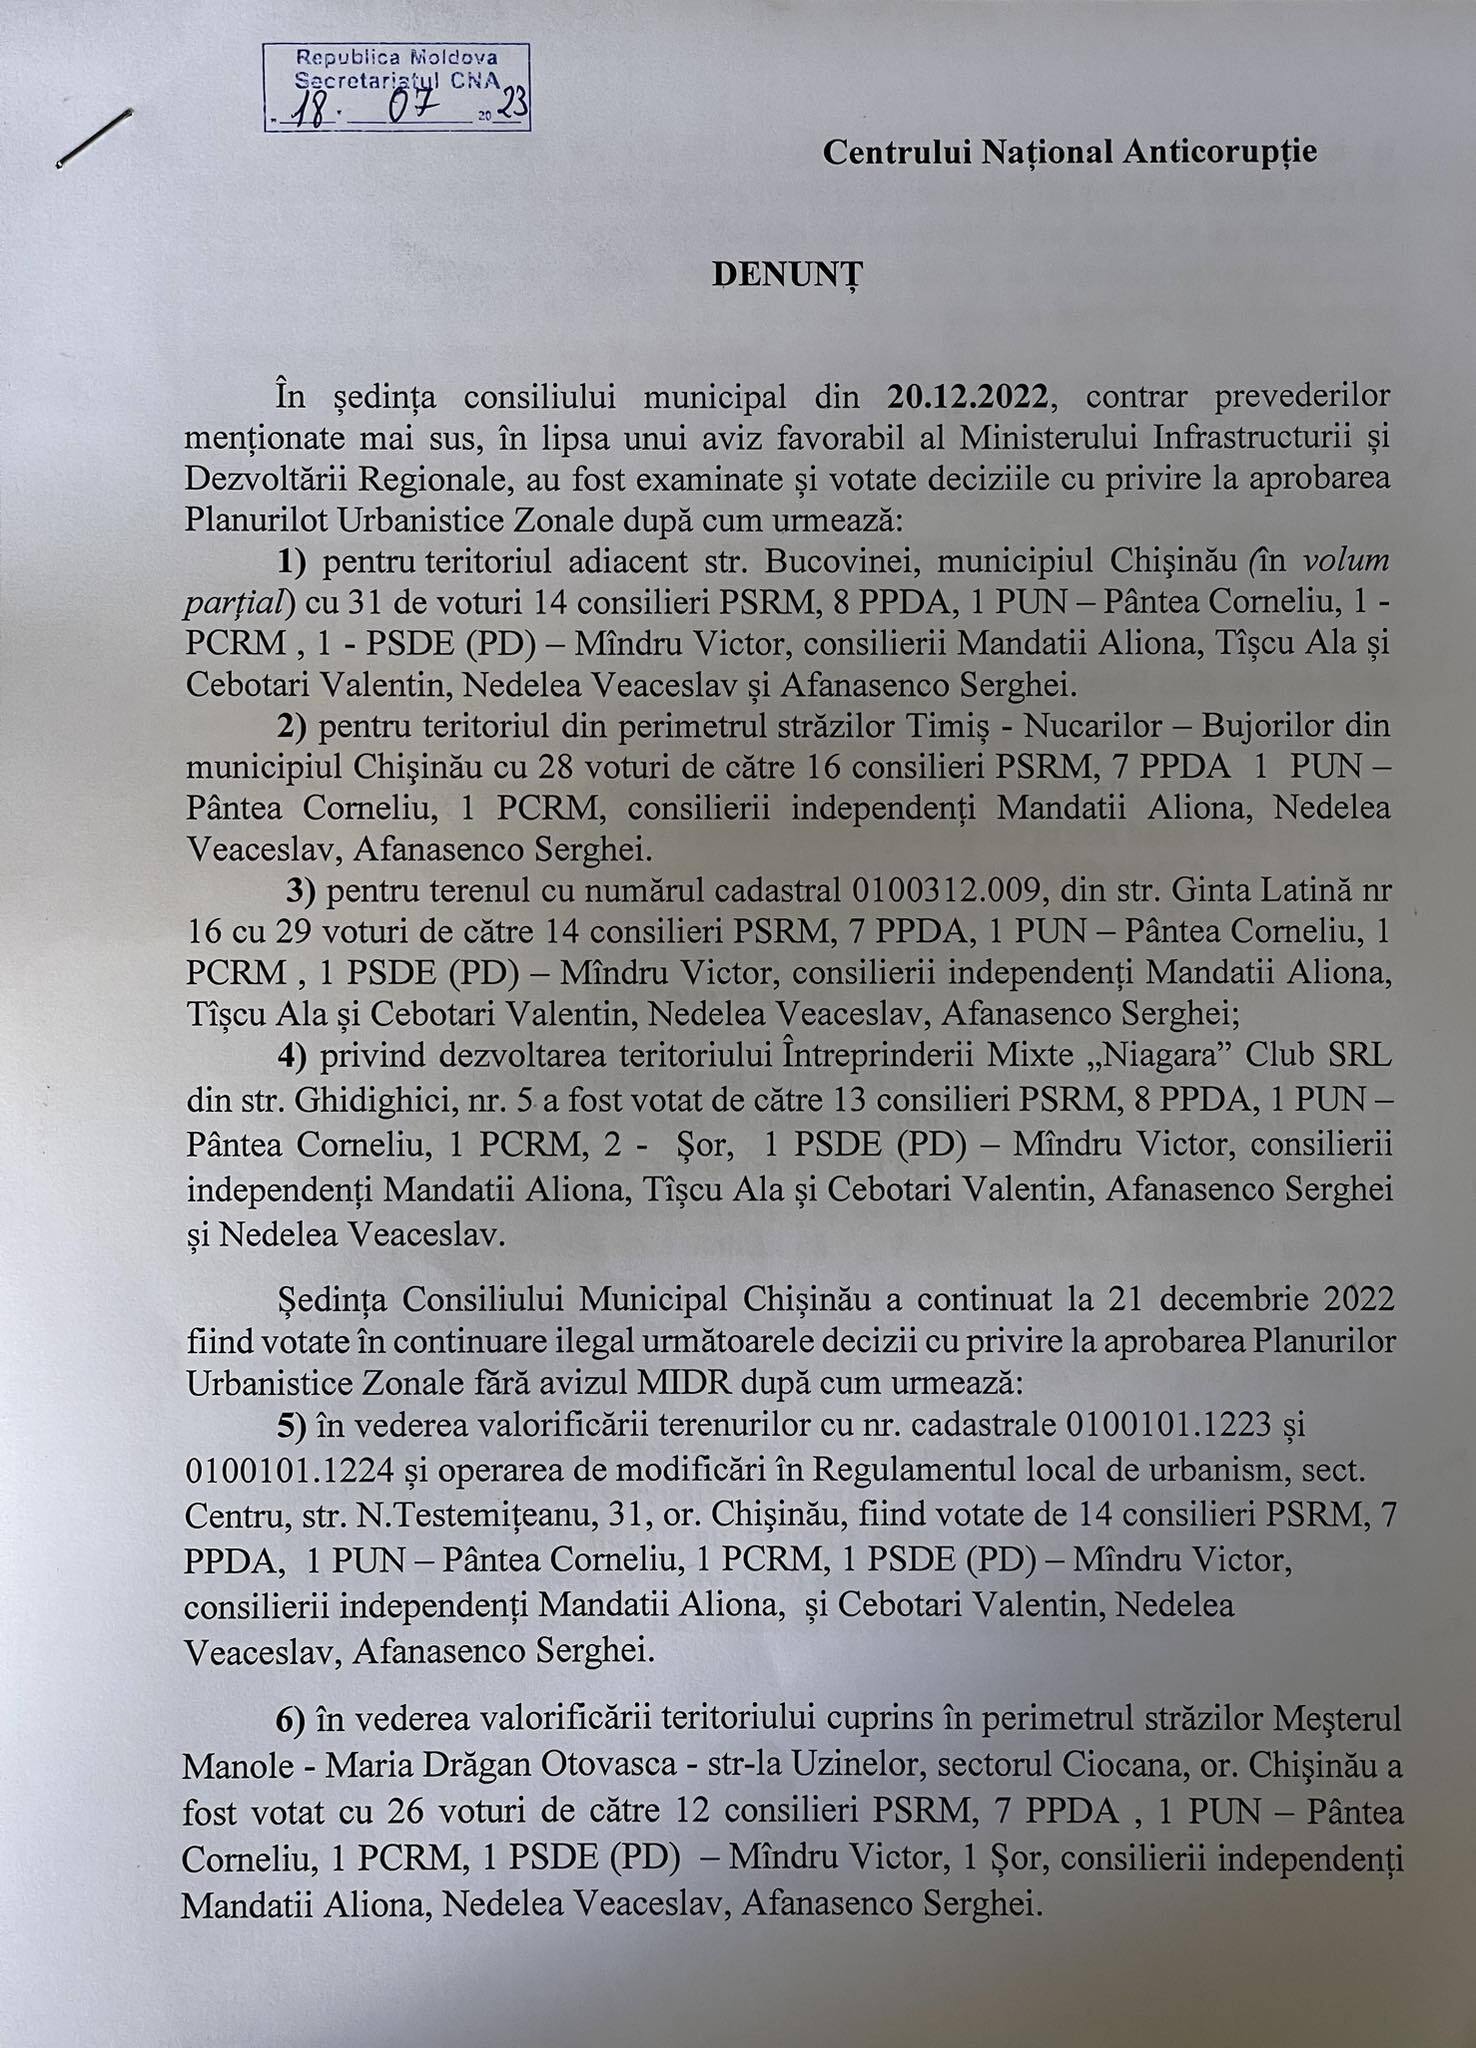 PAS, denunț la CNA: cere atragerea la răspundere a funcționarilor din Primăria Chișinău, implicați în acte de corupție